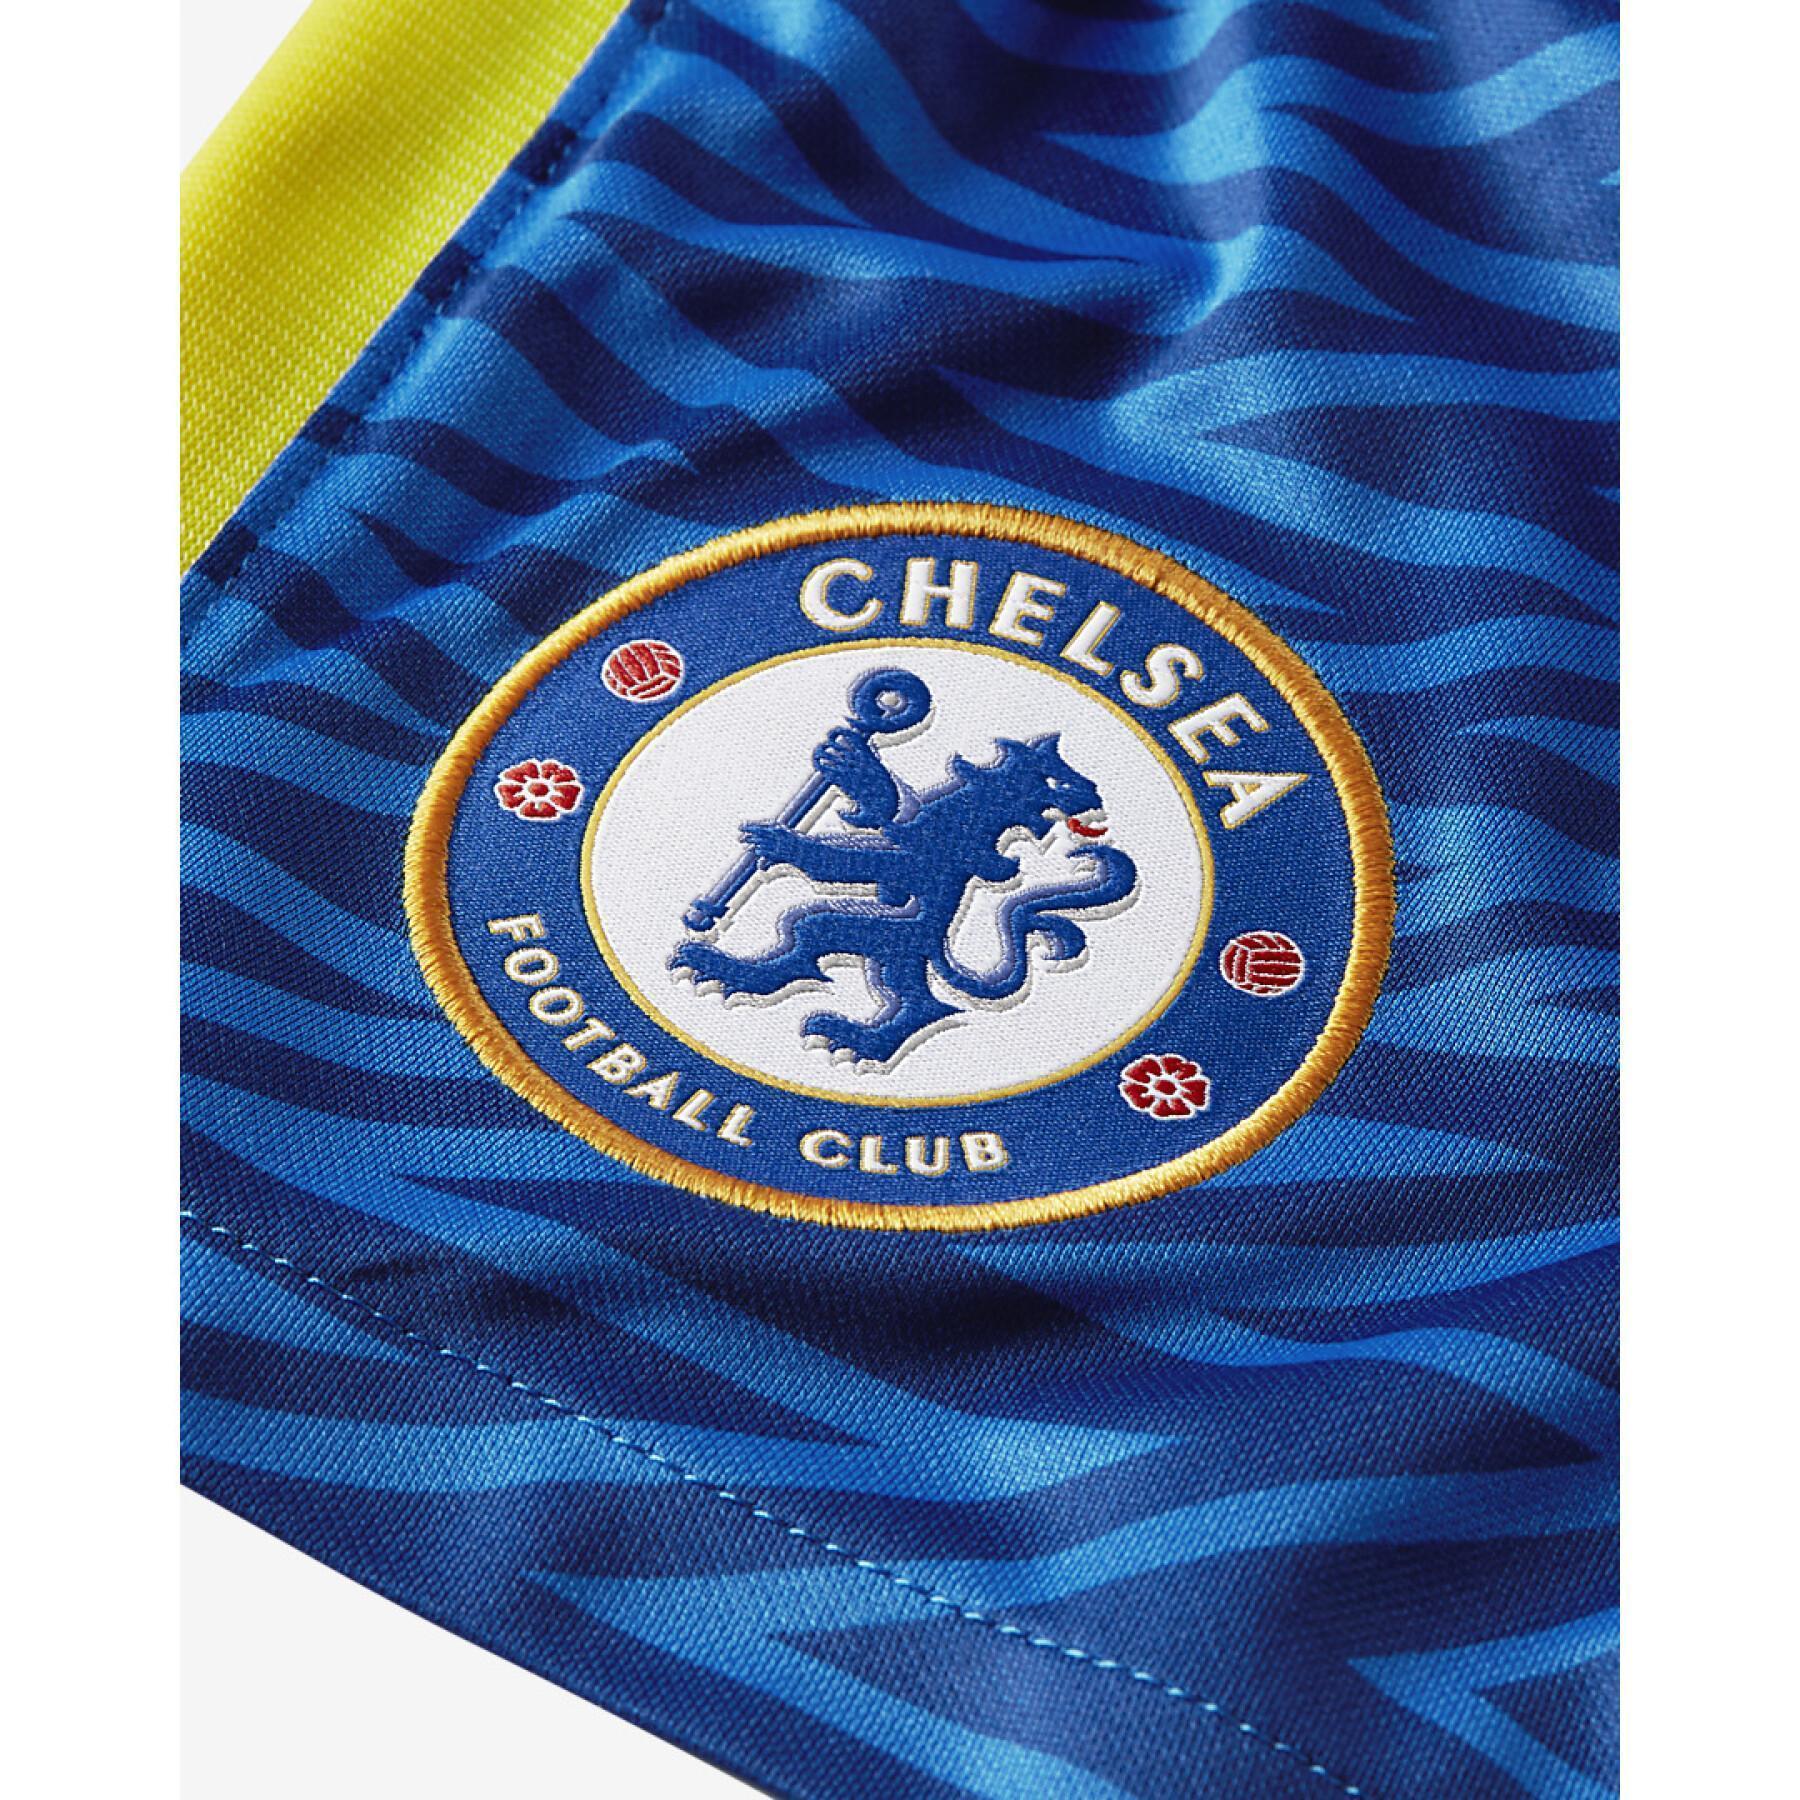 Heimunterhosen Chelsea 2021/22